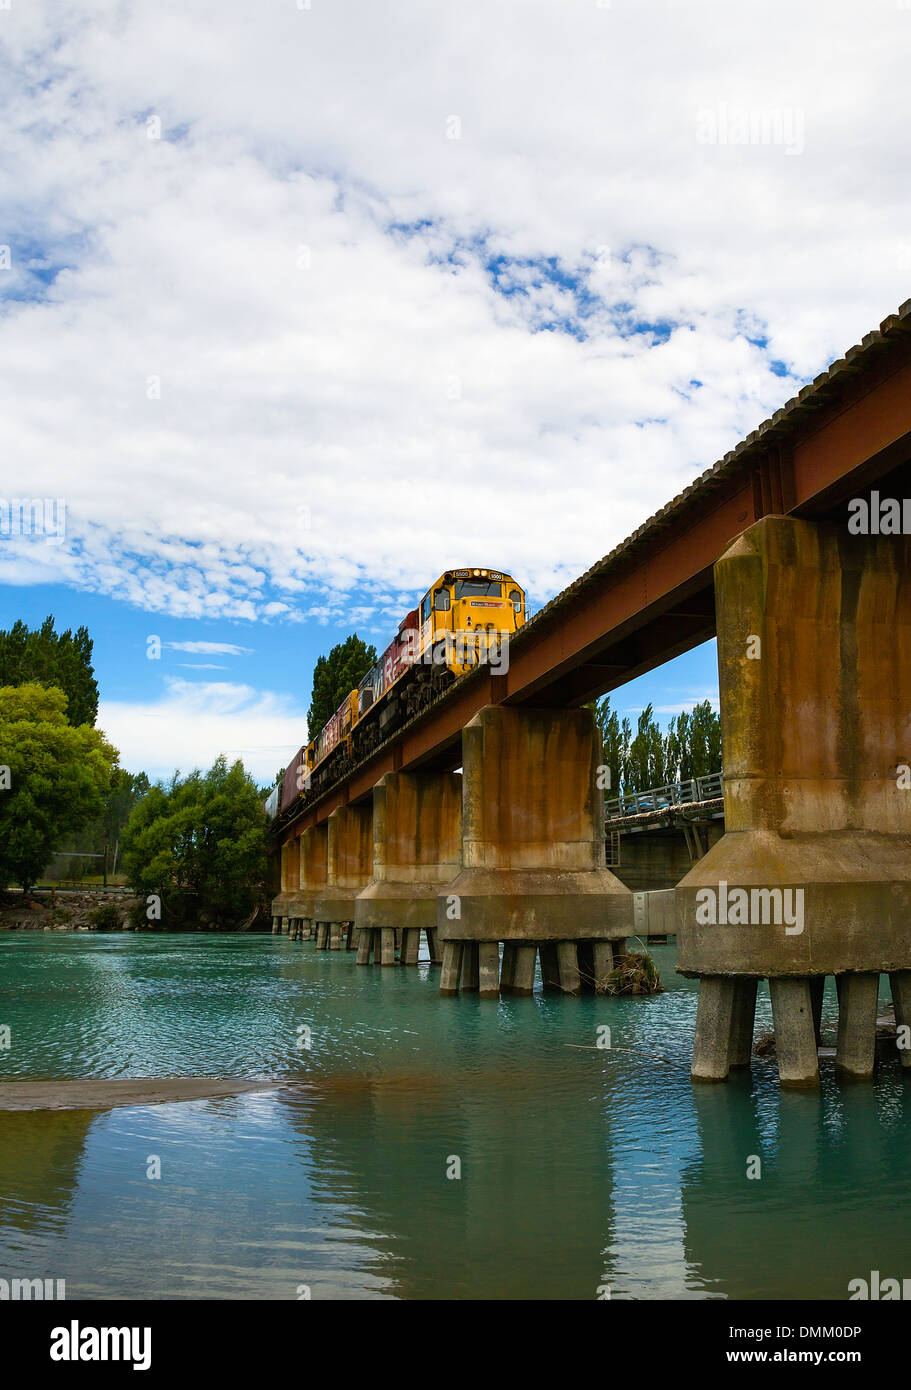 Kiwirail train sur un pont au-dessus de la rivière Waimakariri, près de Christchurch, Canterbury, île du Sud, Nouvelle-Zélande Banque D'Images